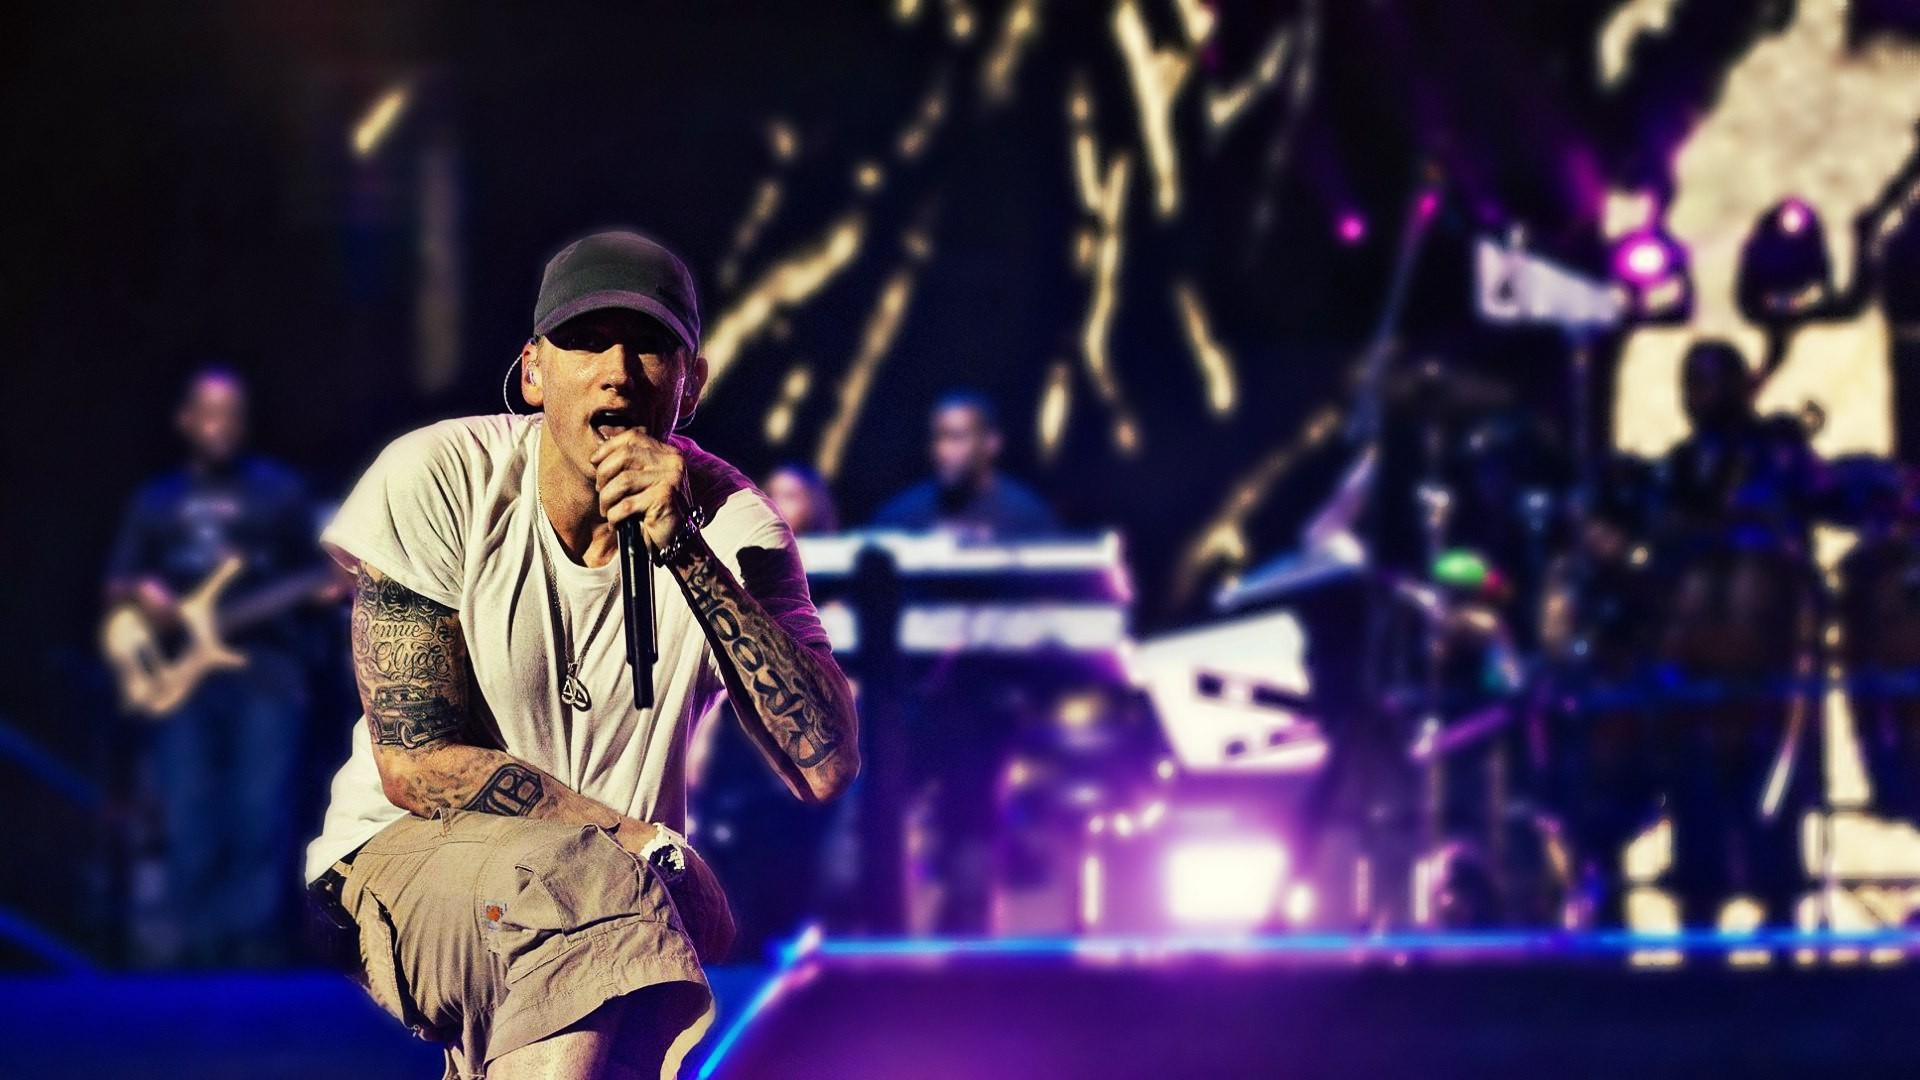 Eminem On Stage - Eminem On Stage Hd , HD Wallpaper & Backgrounds